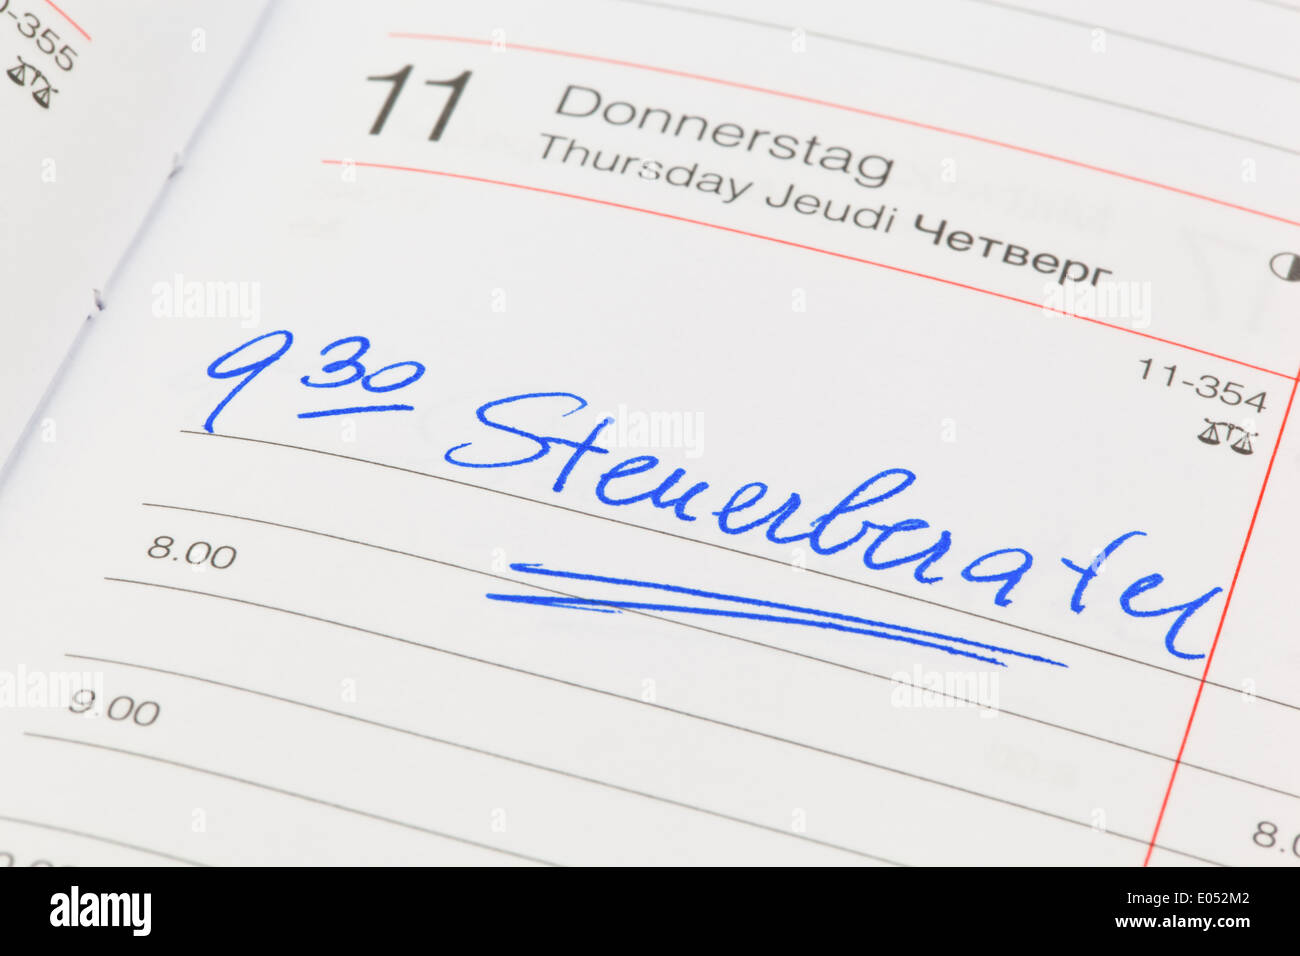 Un appuntamento viene messo giù in un calendario: consulente fiscale, Ein Termin ist in einem Kalender eingetragen: Steuerberater Foto Stock